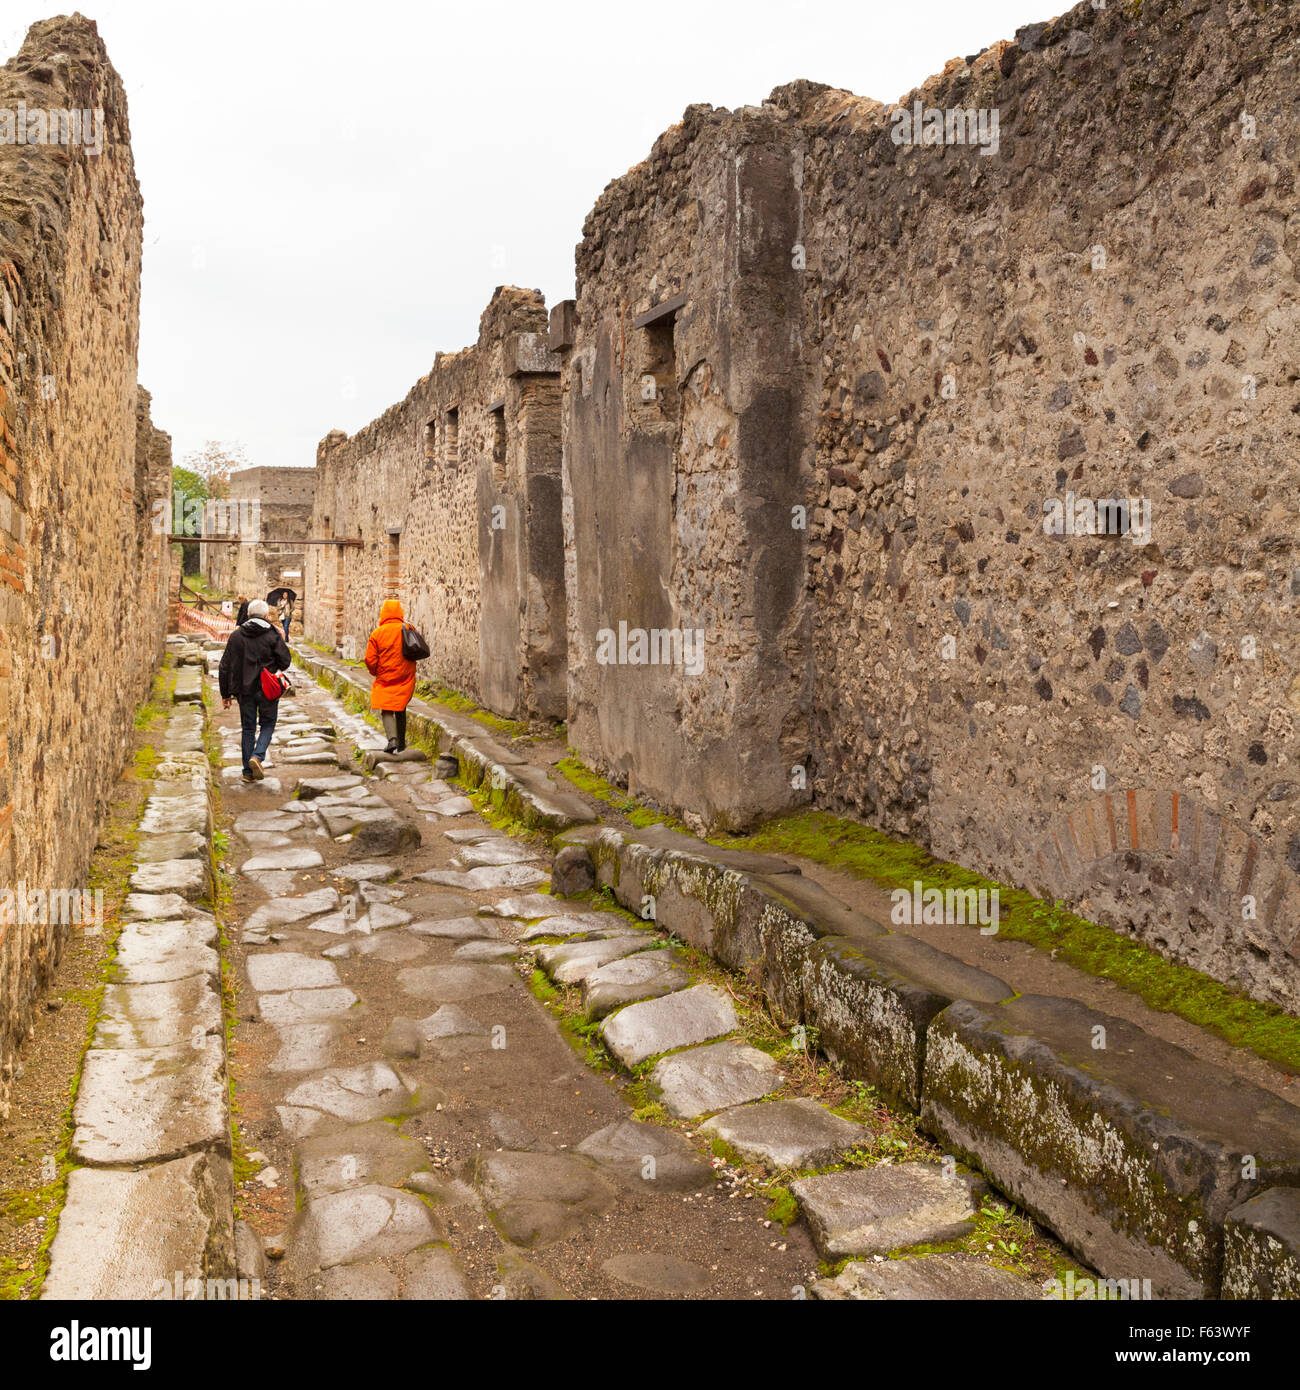 Street in Pompeii, ancient Roman excavation and UNESCO World Heritage Site, Pompei, Italy Stock Photo